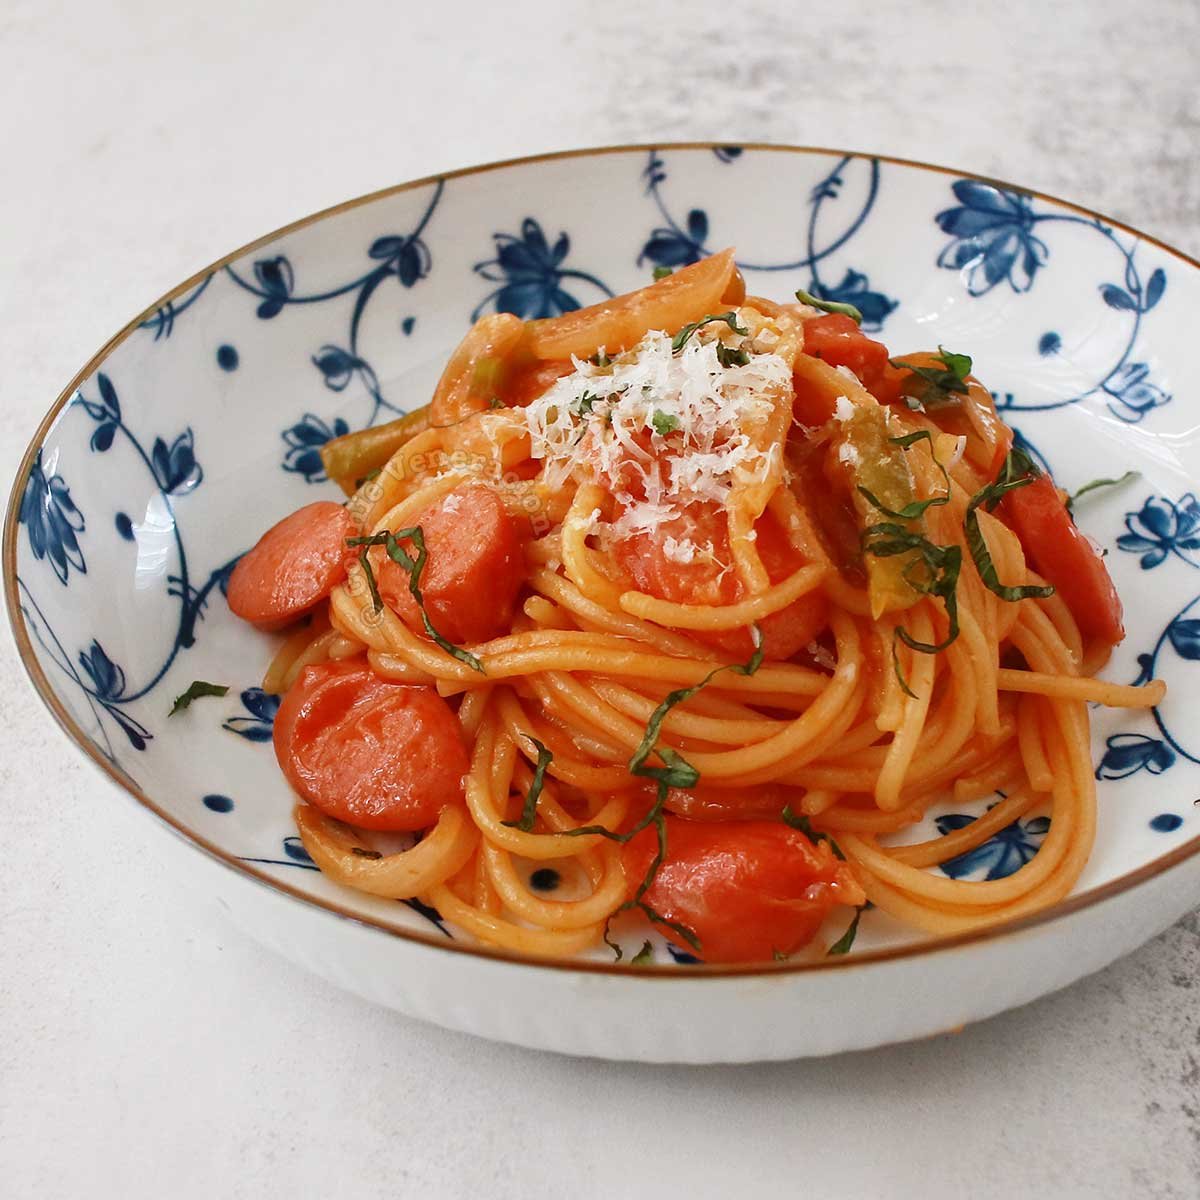 Спагетти с перцем. Спагетти с кетчупом. Кетчуп Помодоро. Томатный соус для спагетти с дедушкой. Спагетти творог и кетчуп.